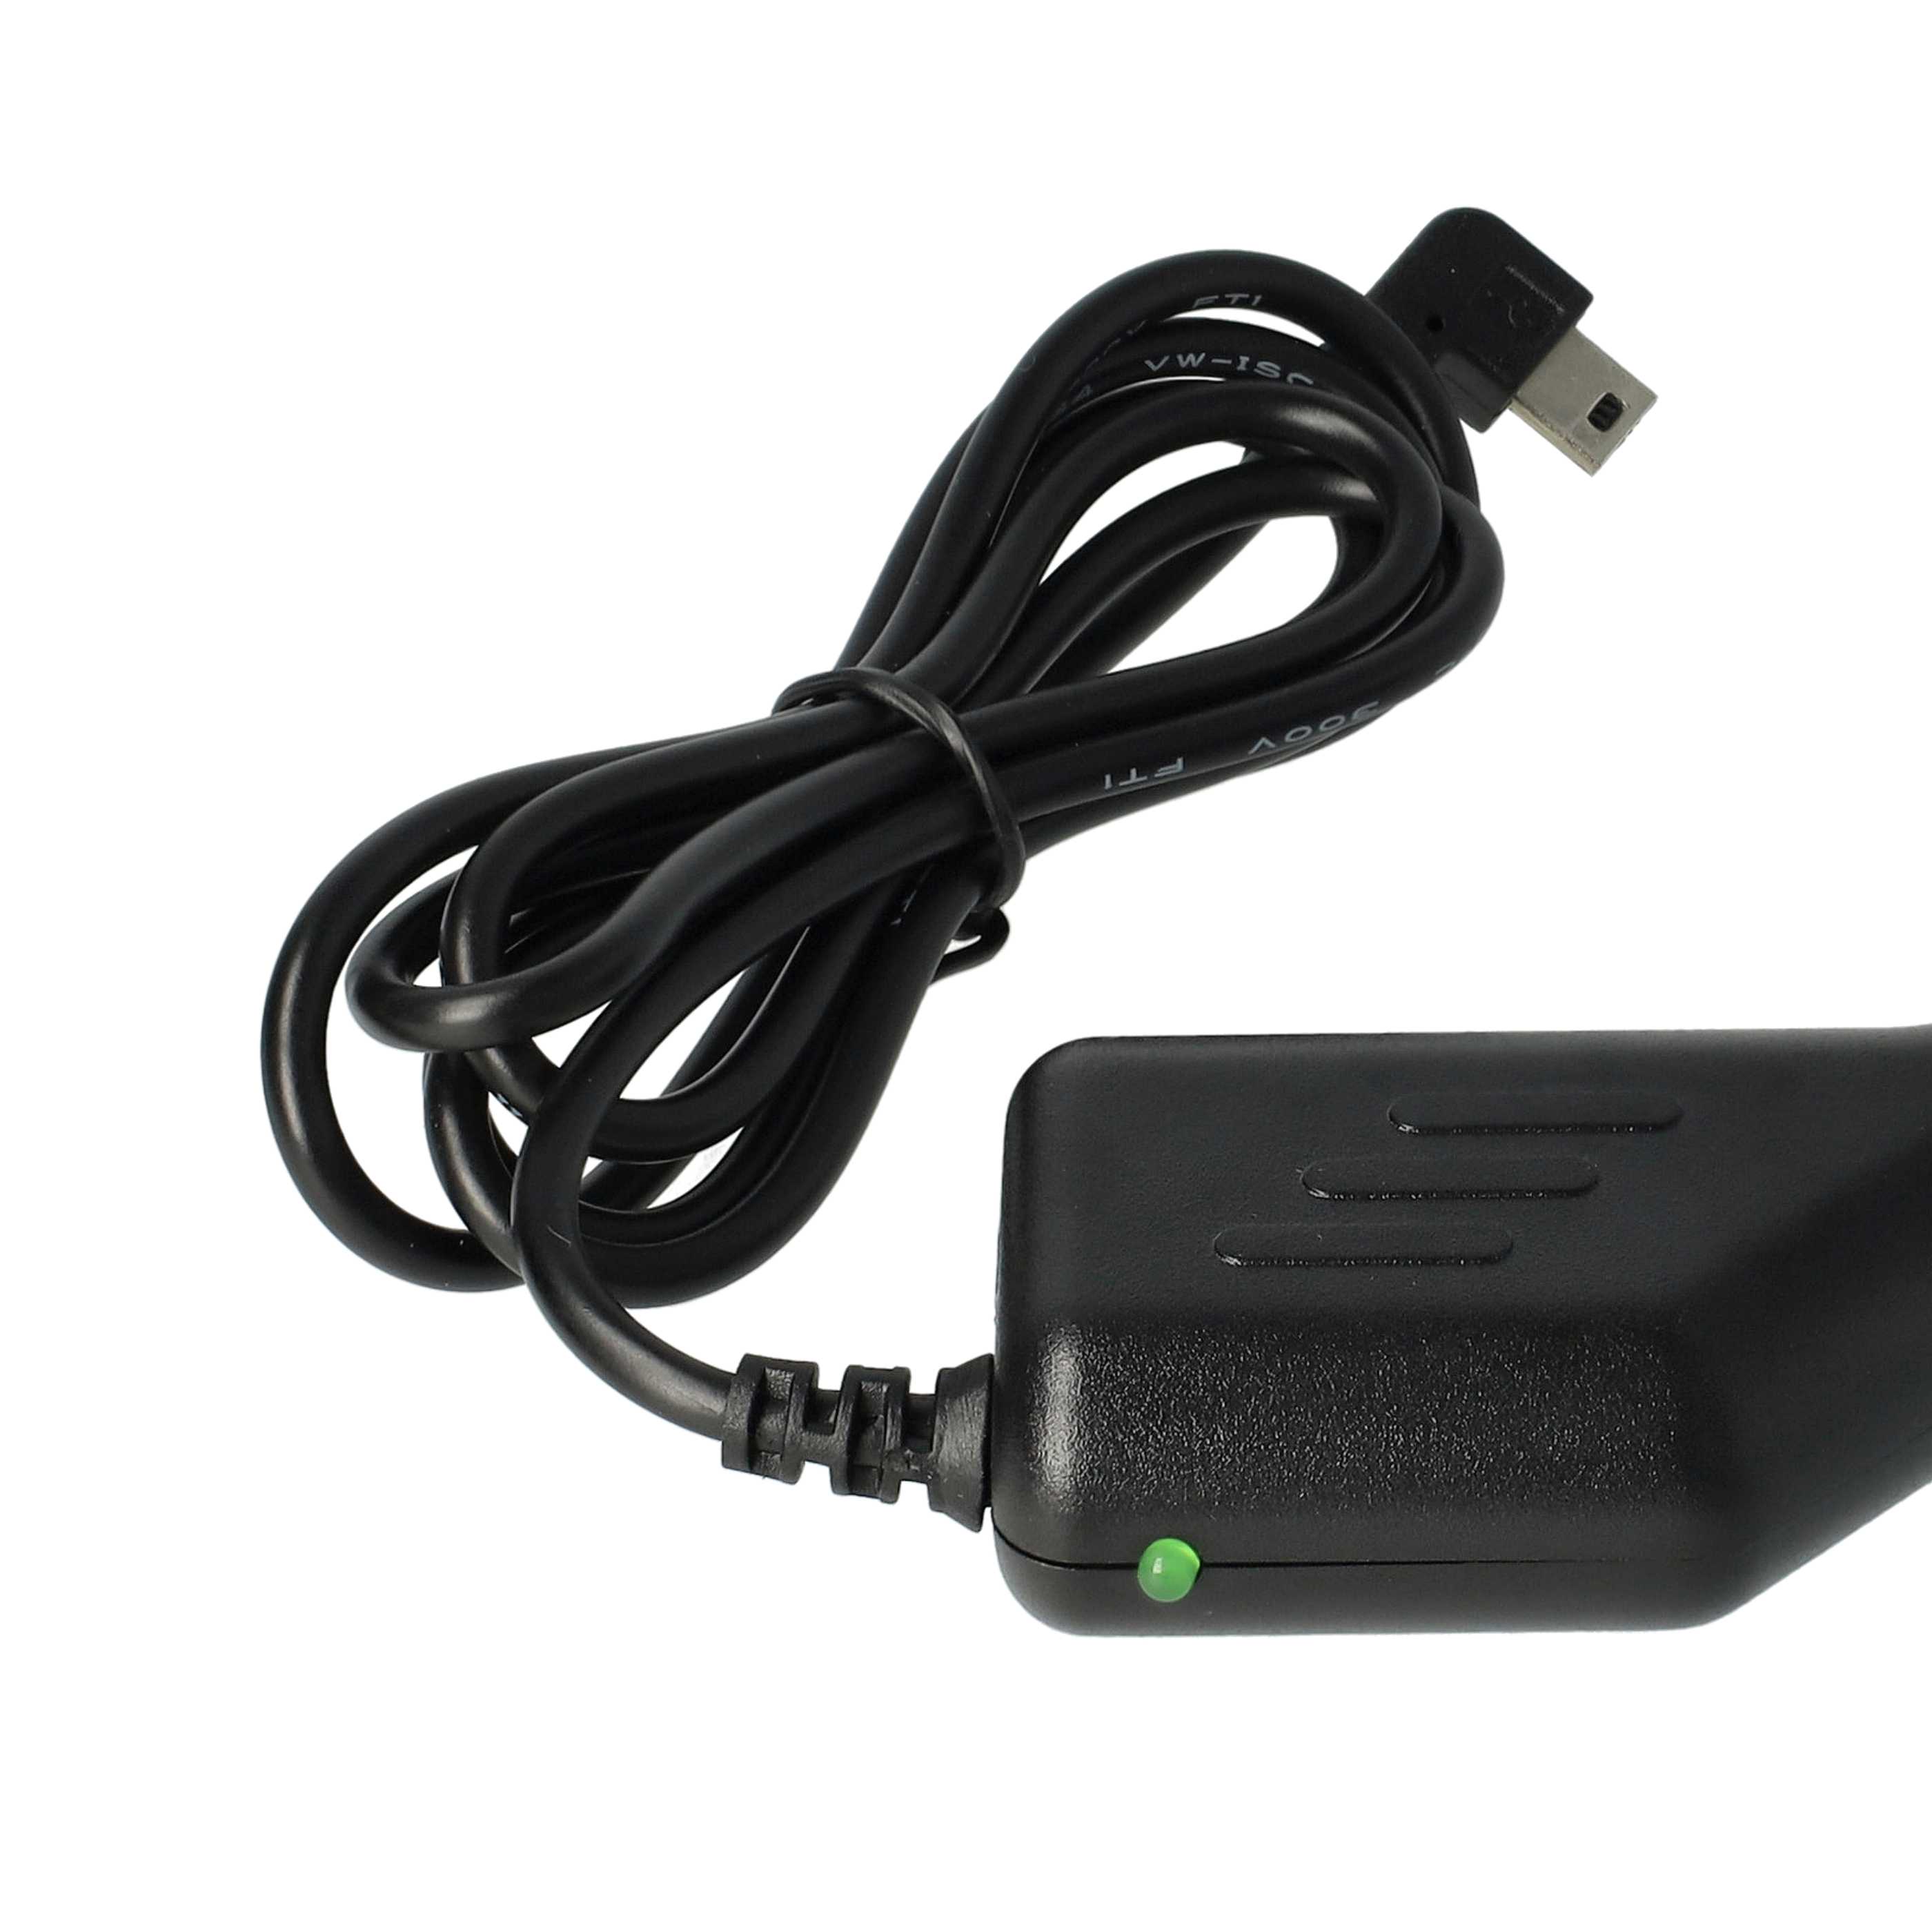 Chargeur voiture mini-USB 1,0 A pour GPS - allume-cigare, prise coudée